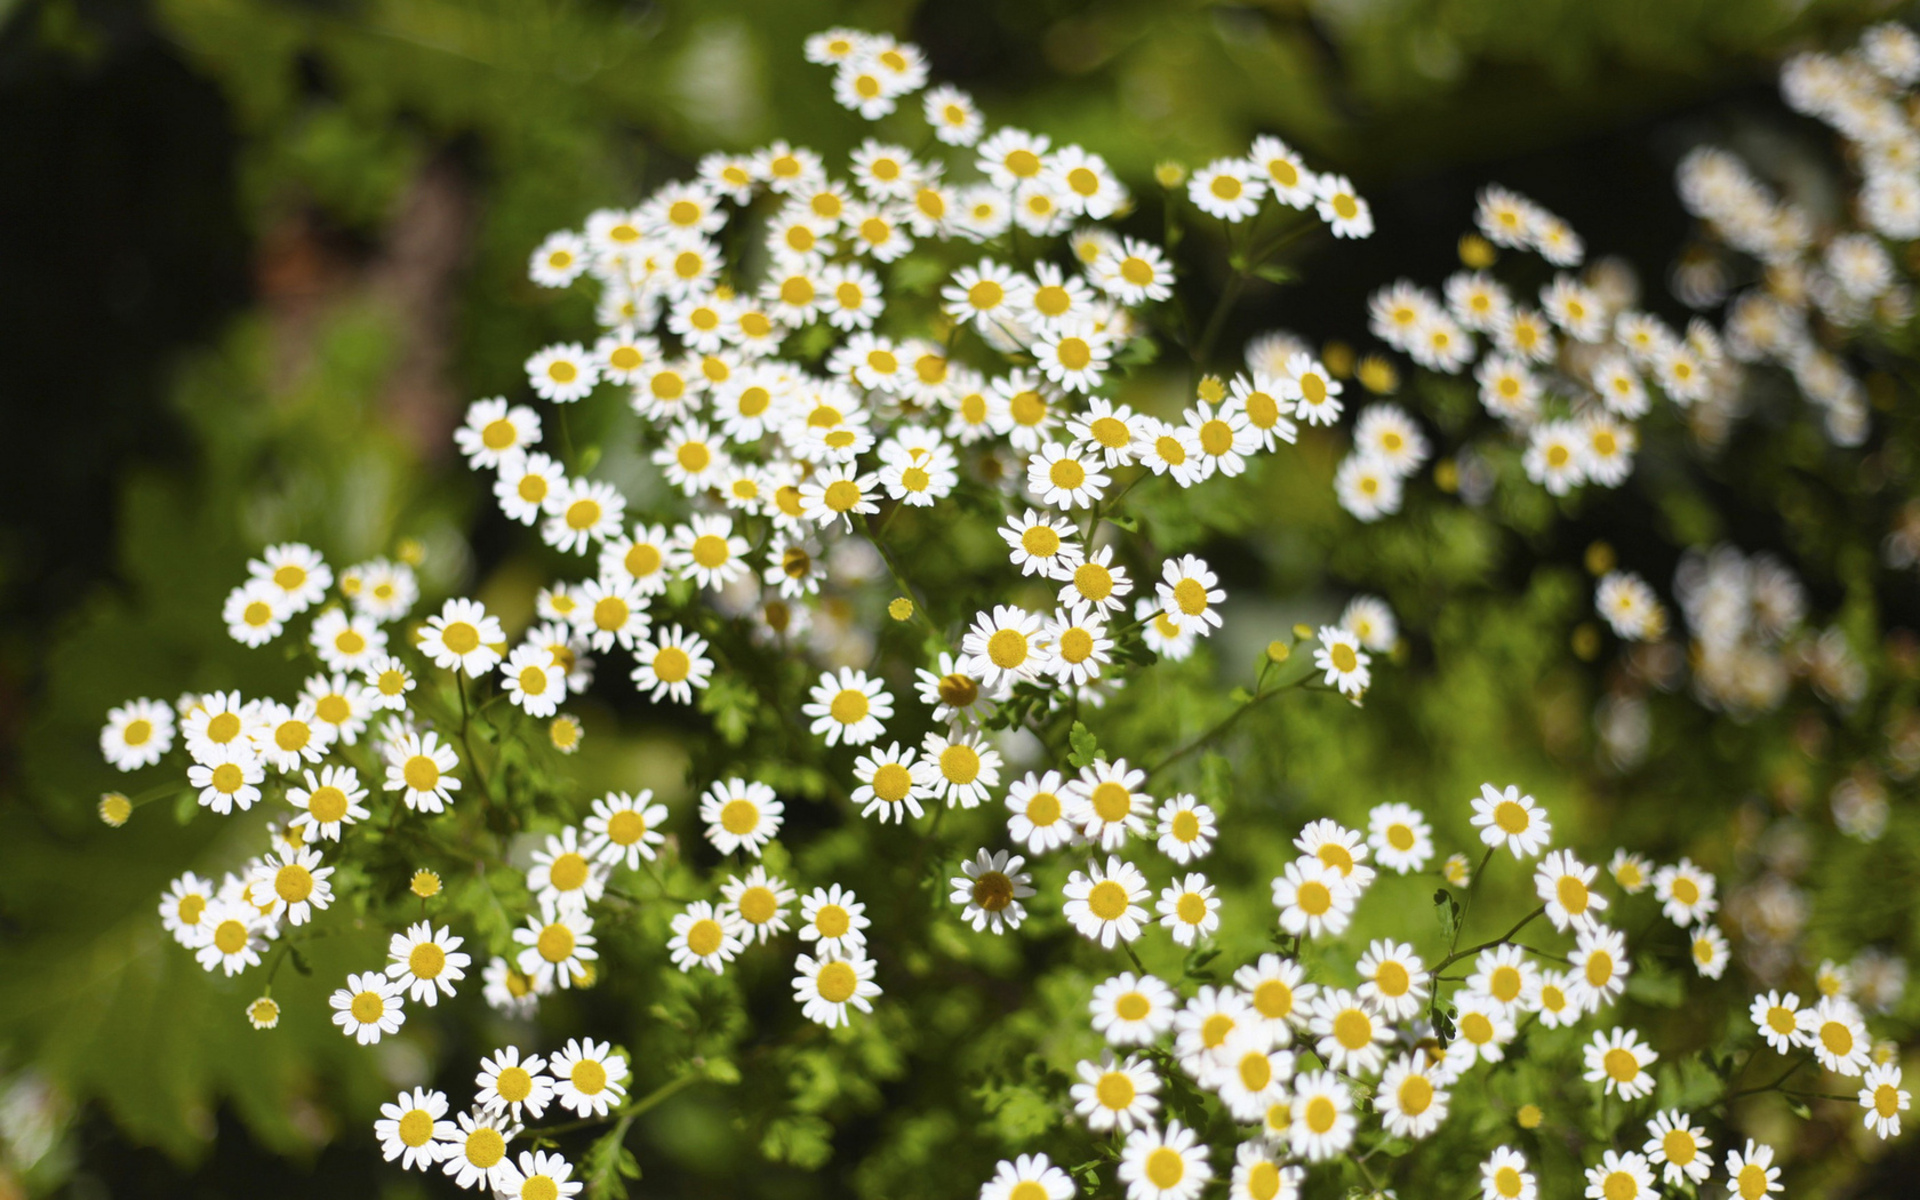 Hoa cúc: Thưởng thức khung cảnh tuyệt đẹp của những bông hoa cúc trắng đang nở rực rỡ trong những vườn hoa xanh tươi. Hãy để tâm hồn bạn thư giãn và được xúc động bởi vẻ đẹp tinh khôi của hoa cúc.